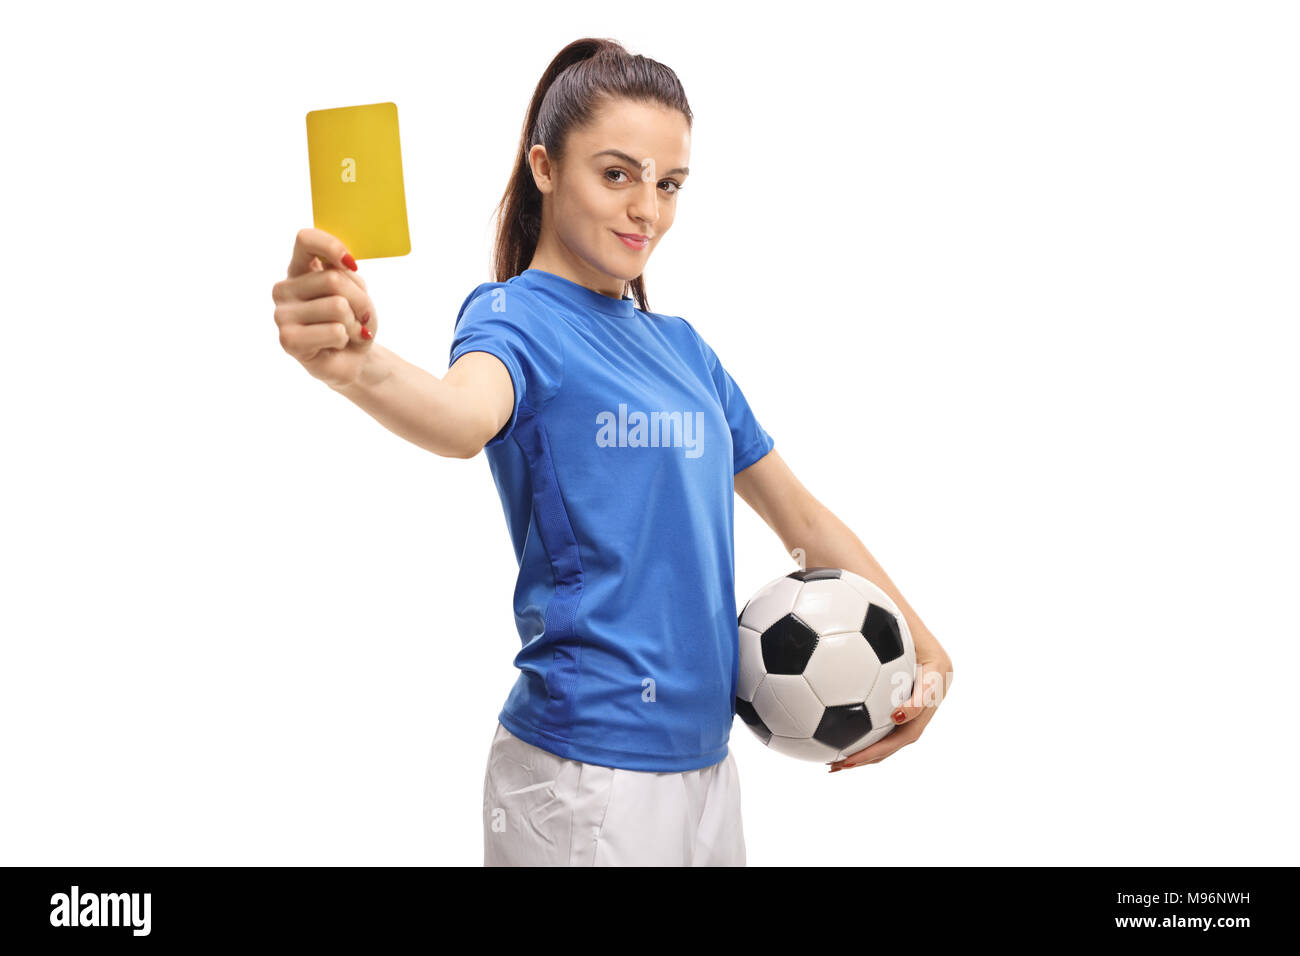 Calcio femminile player che mostra un cartellino giallo isolato su sfondo bianco Foto Stock